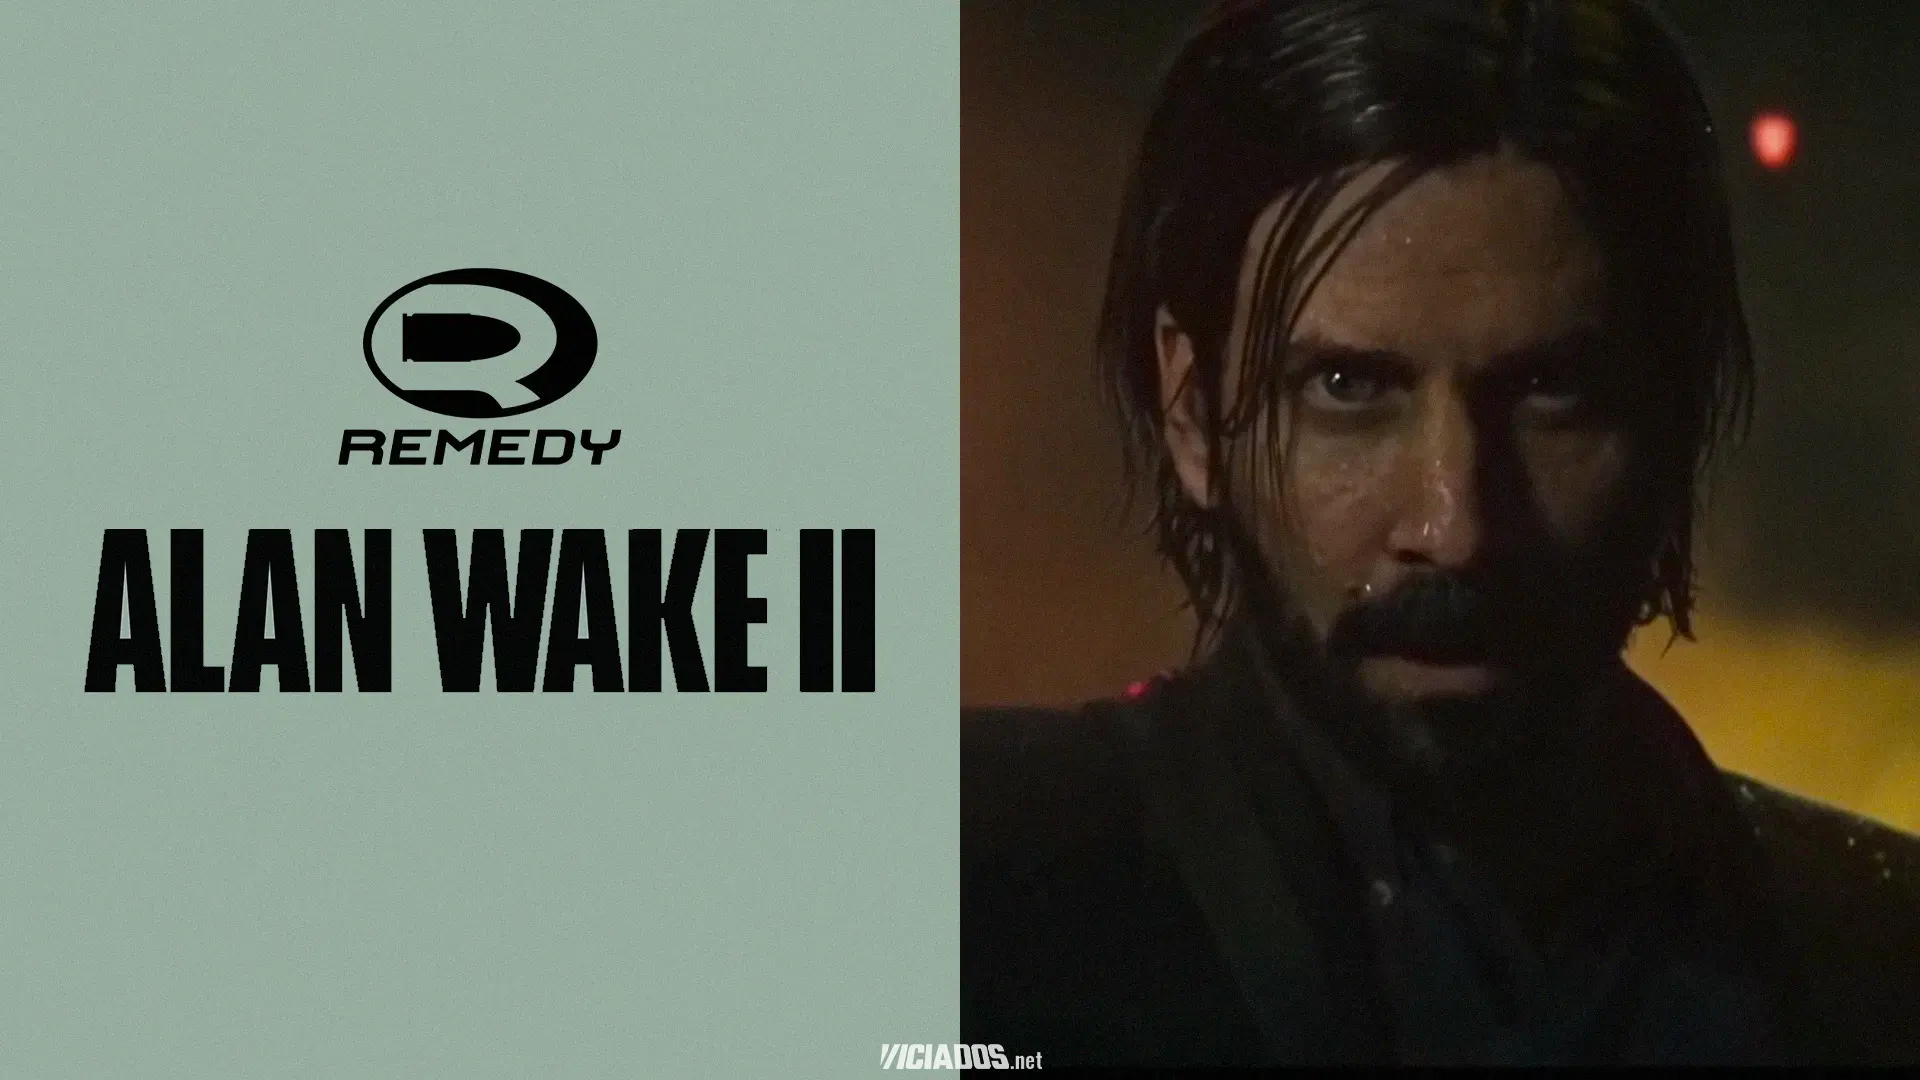 Alan Wake 2 | Data de lançamento pode ter sido vazada pelo ator do protagonista 2023 Viciados